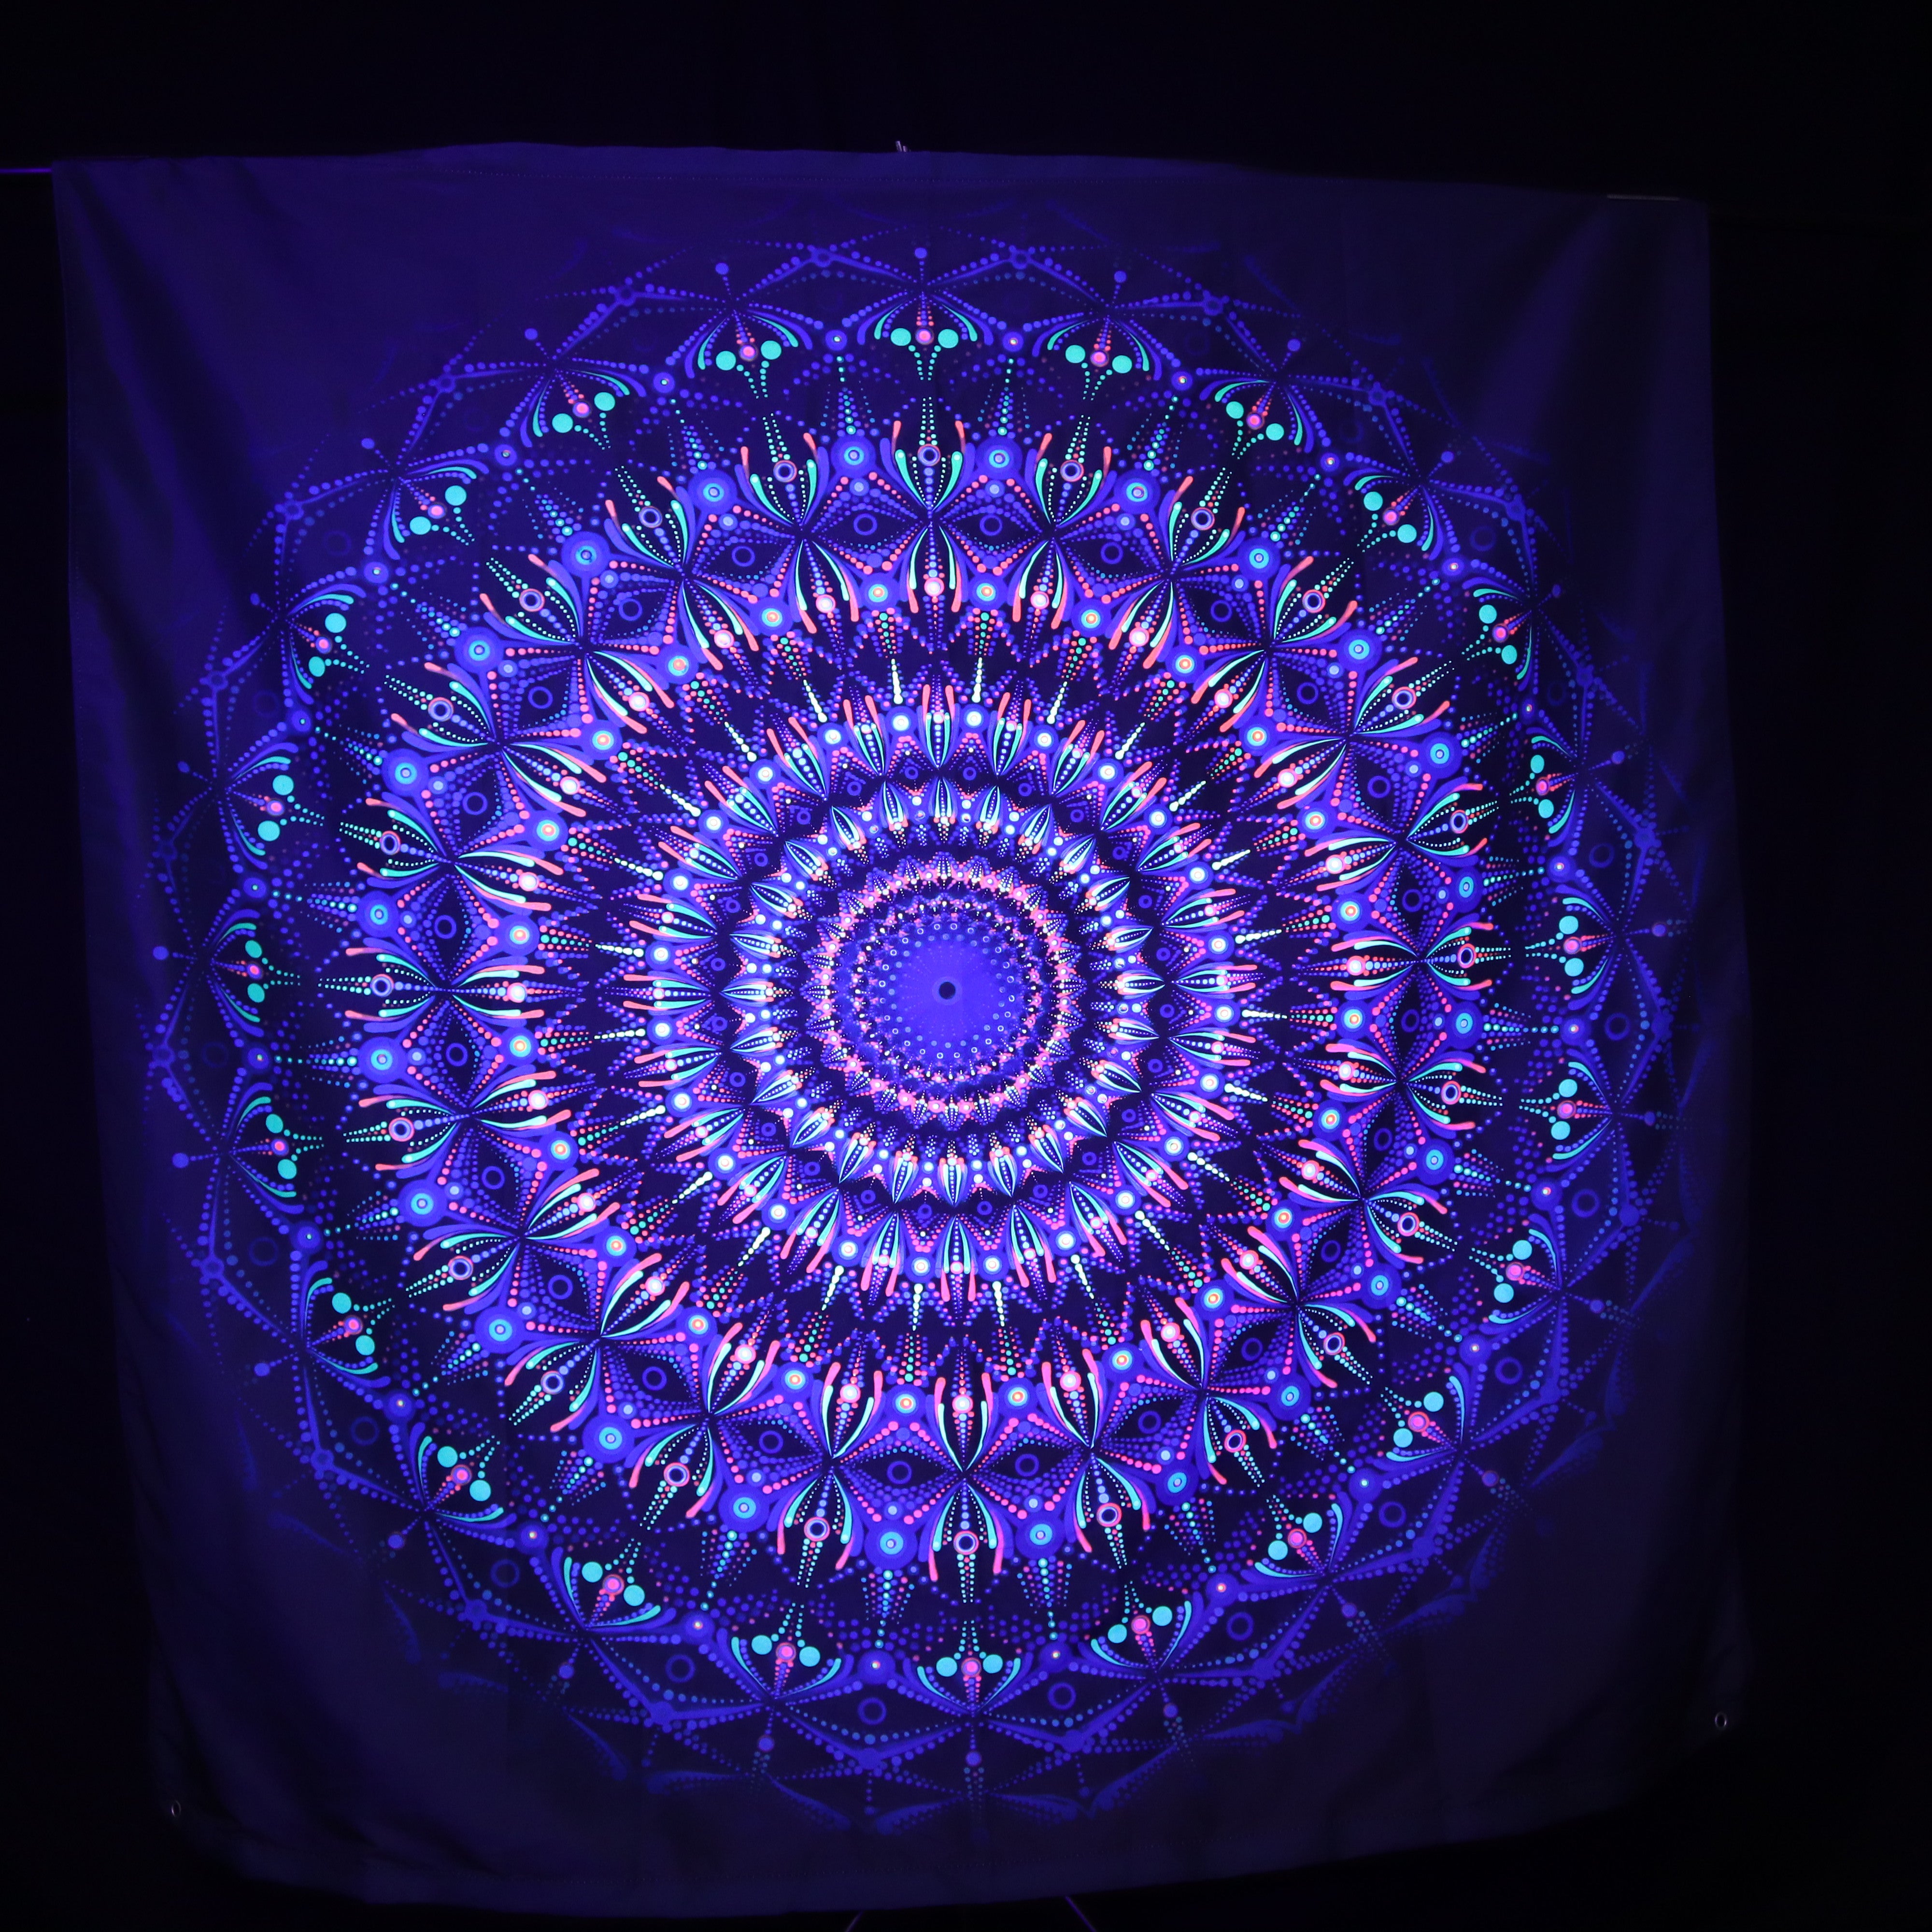 150cm Temporal Trust UV REACTIVE Tapestry